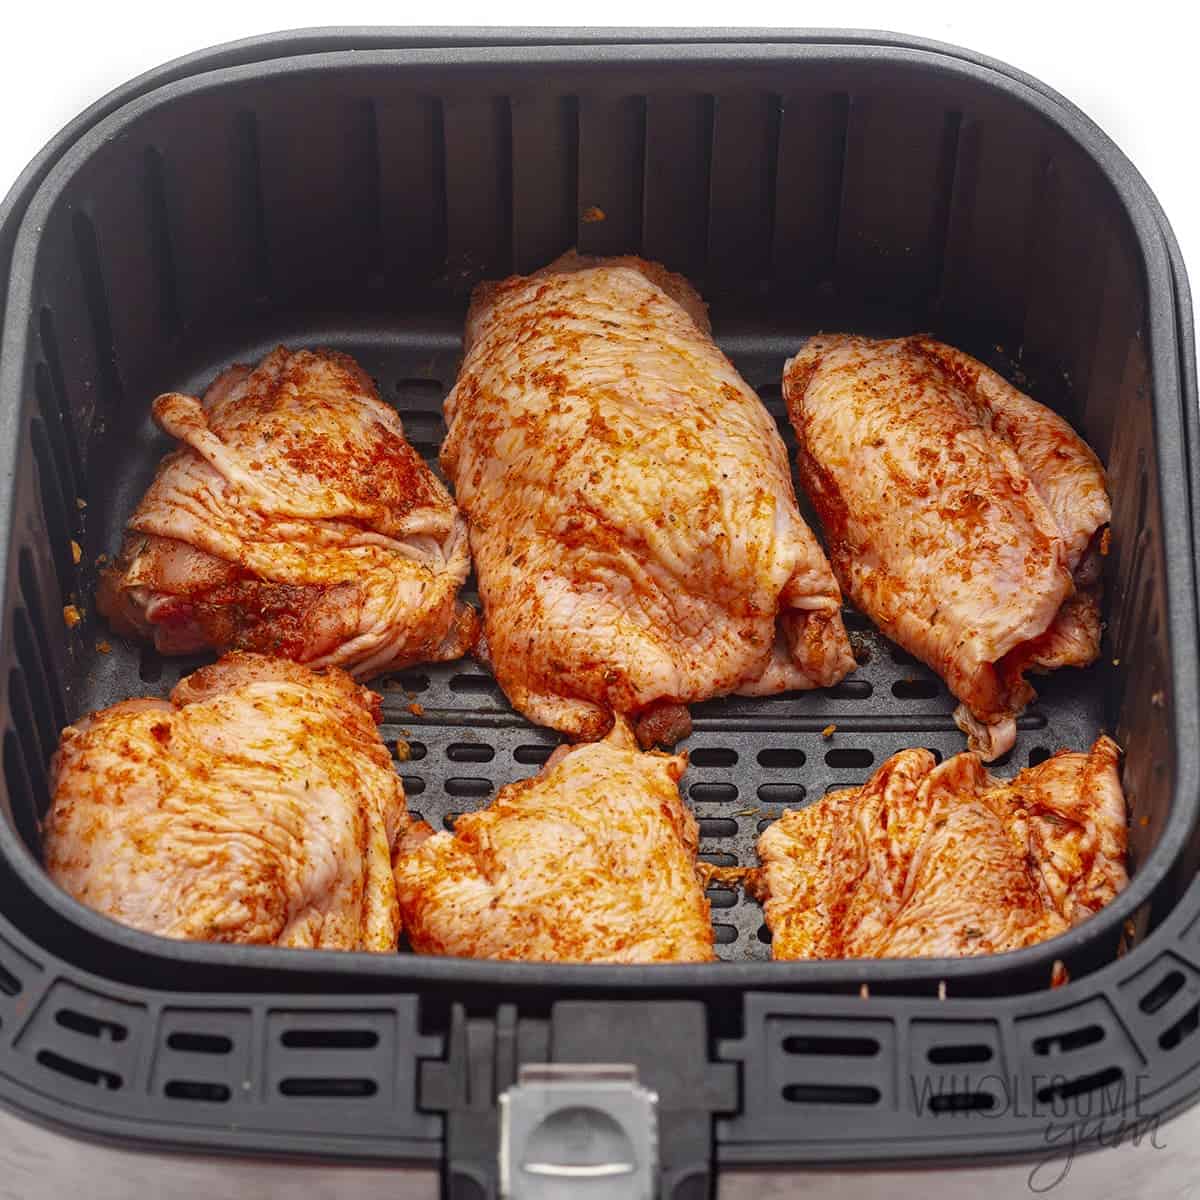 Raw chicken thighs in the air fryer basket.